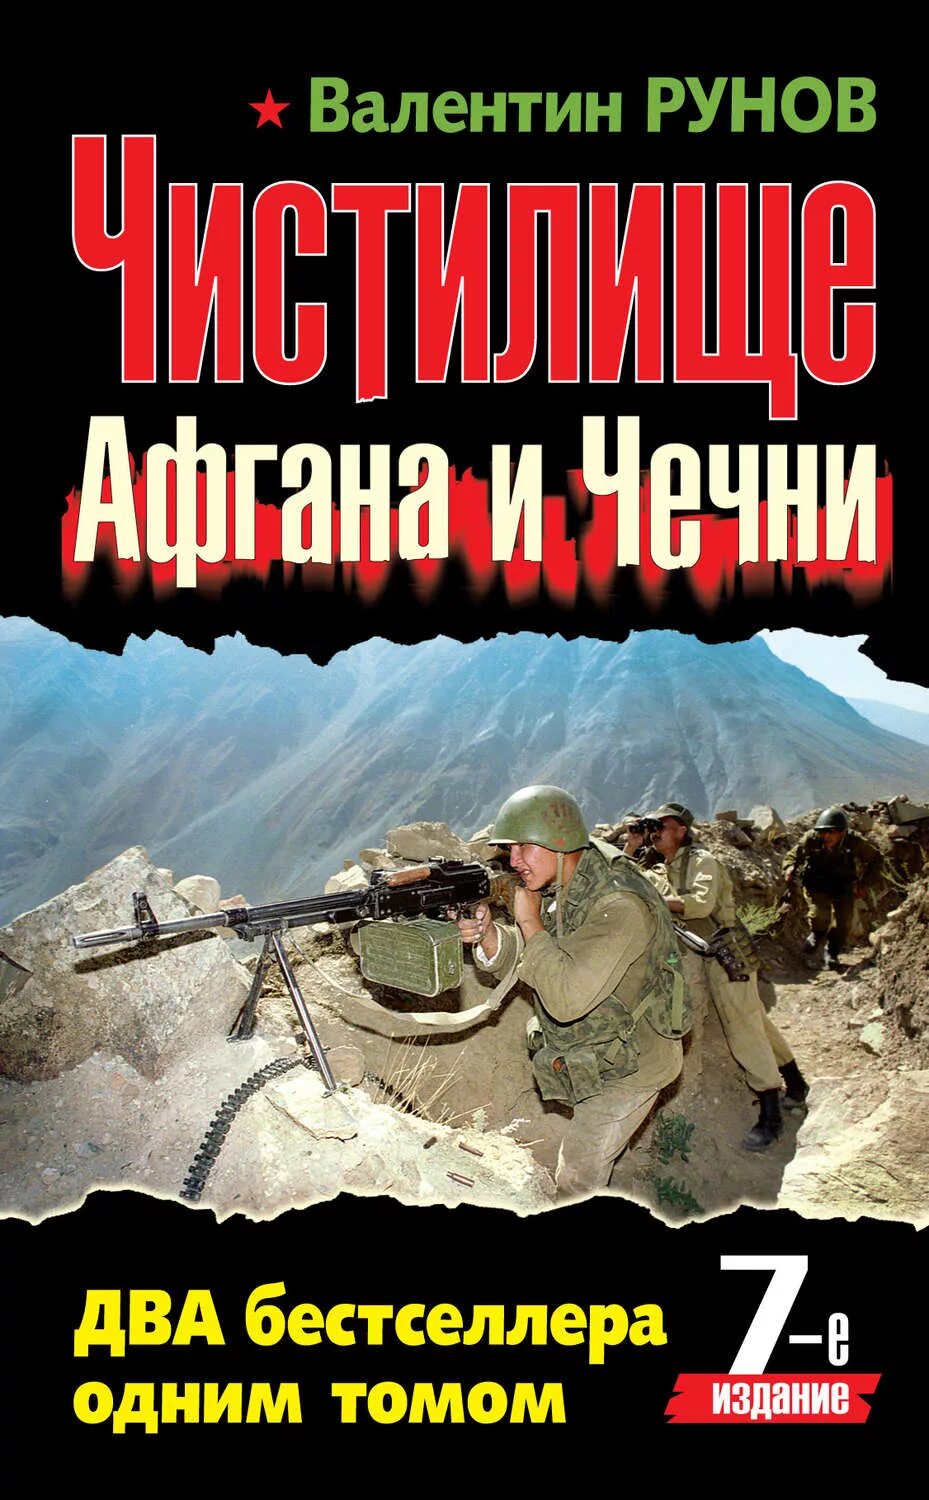 Книги про войну в чечне читать. Чистилище Афгана и Чечни книга. Книги о войне в Чечне.